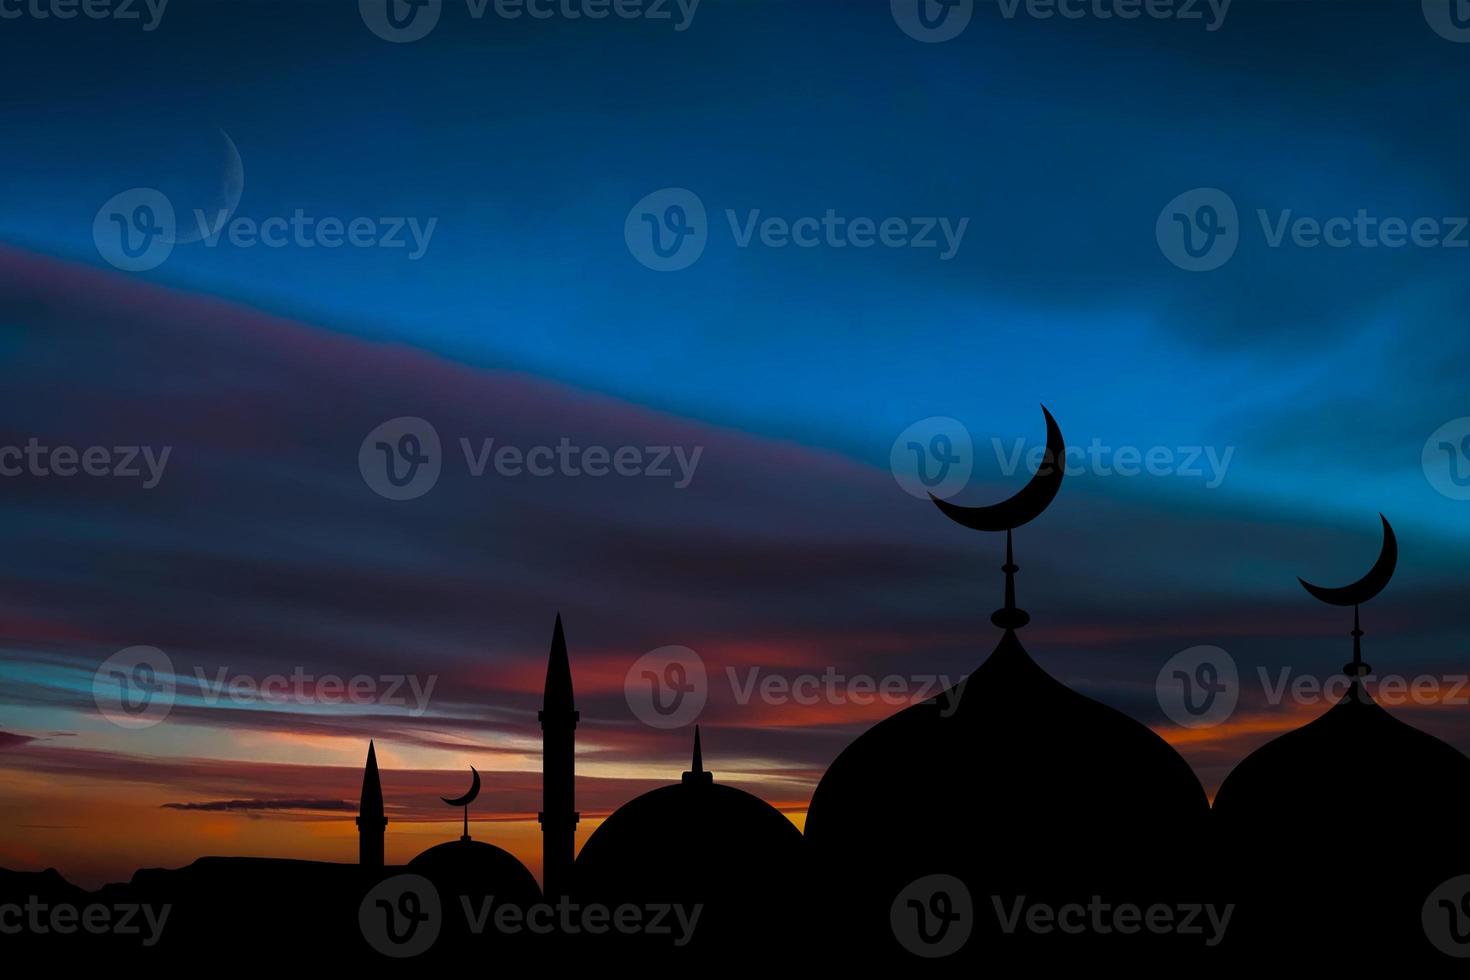 cúpula de mesquitas no céu crepúsculo azul escuro e lua crescente no fundo, símbolo religião islâmica ramadã e espaço livre para texto árabe, eid al-adha, eid al-fitr, mubarak, muharram islâmico de ano novo foto